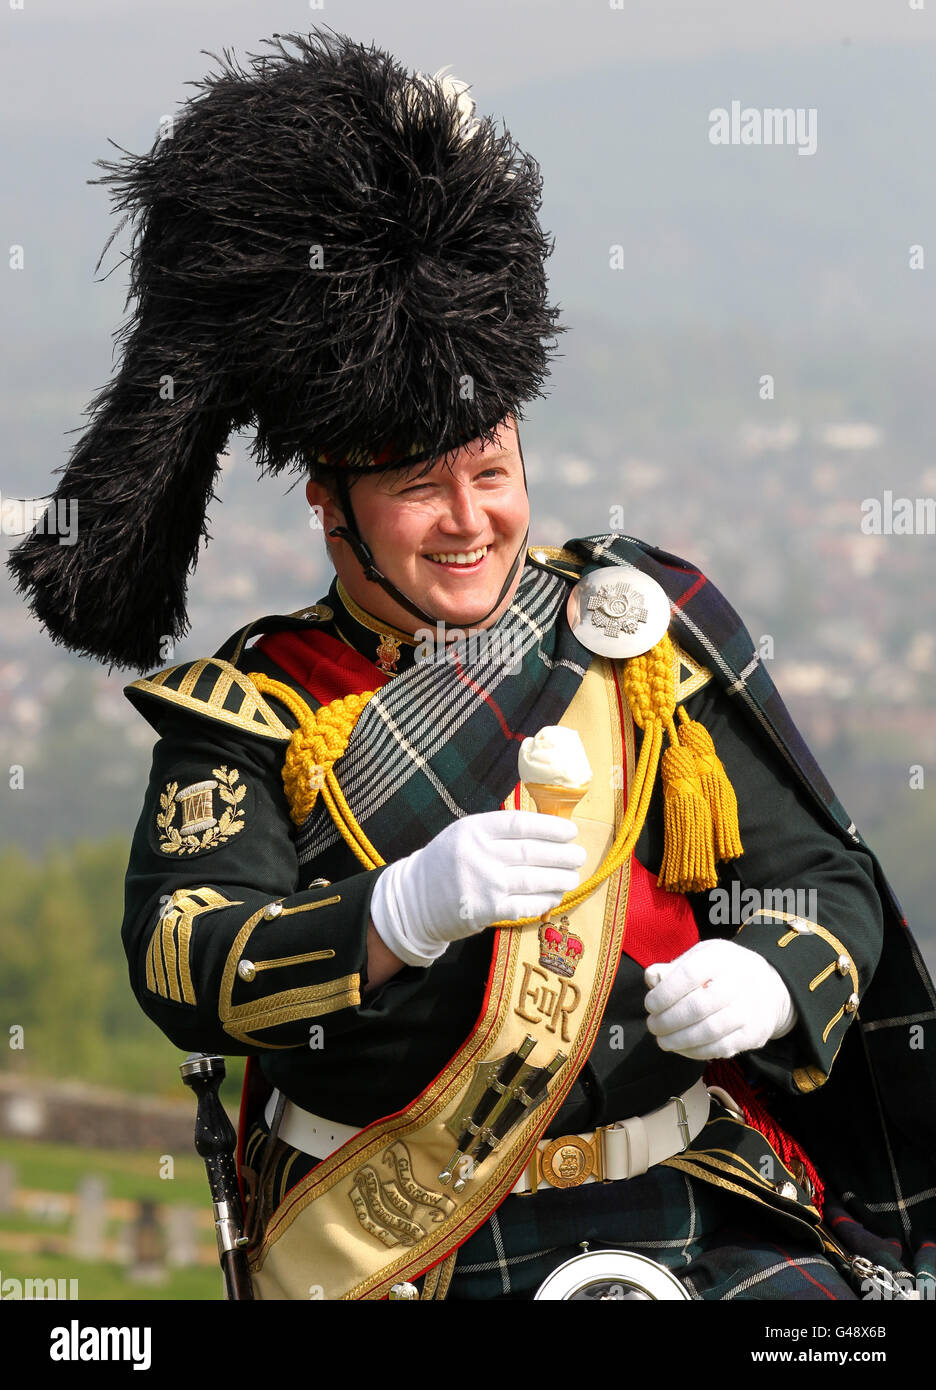 Le Pipe Major Kenny Stoddart, du Pipes and Drums du corps de formation des officiers des universités de Glasgow et Strathclyde, mange une glace après un hommage de 21 armes à feu pour souligner le 85e anniversaire de la reine au château de Stirling. Banque D'Images